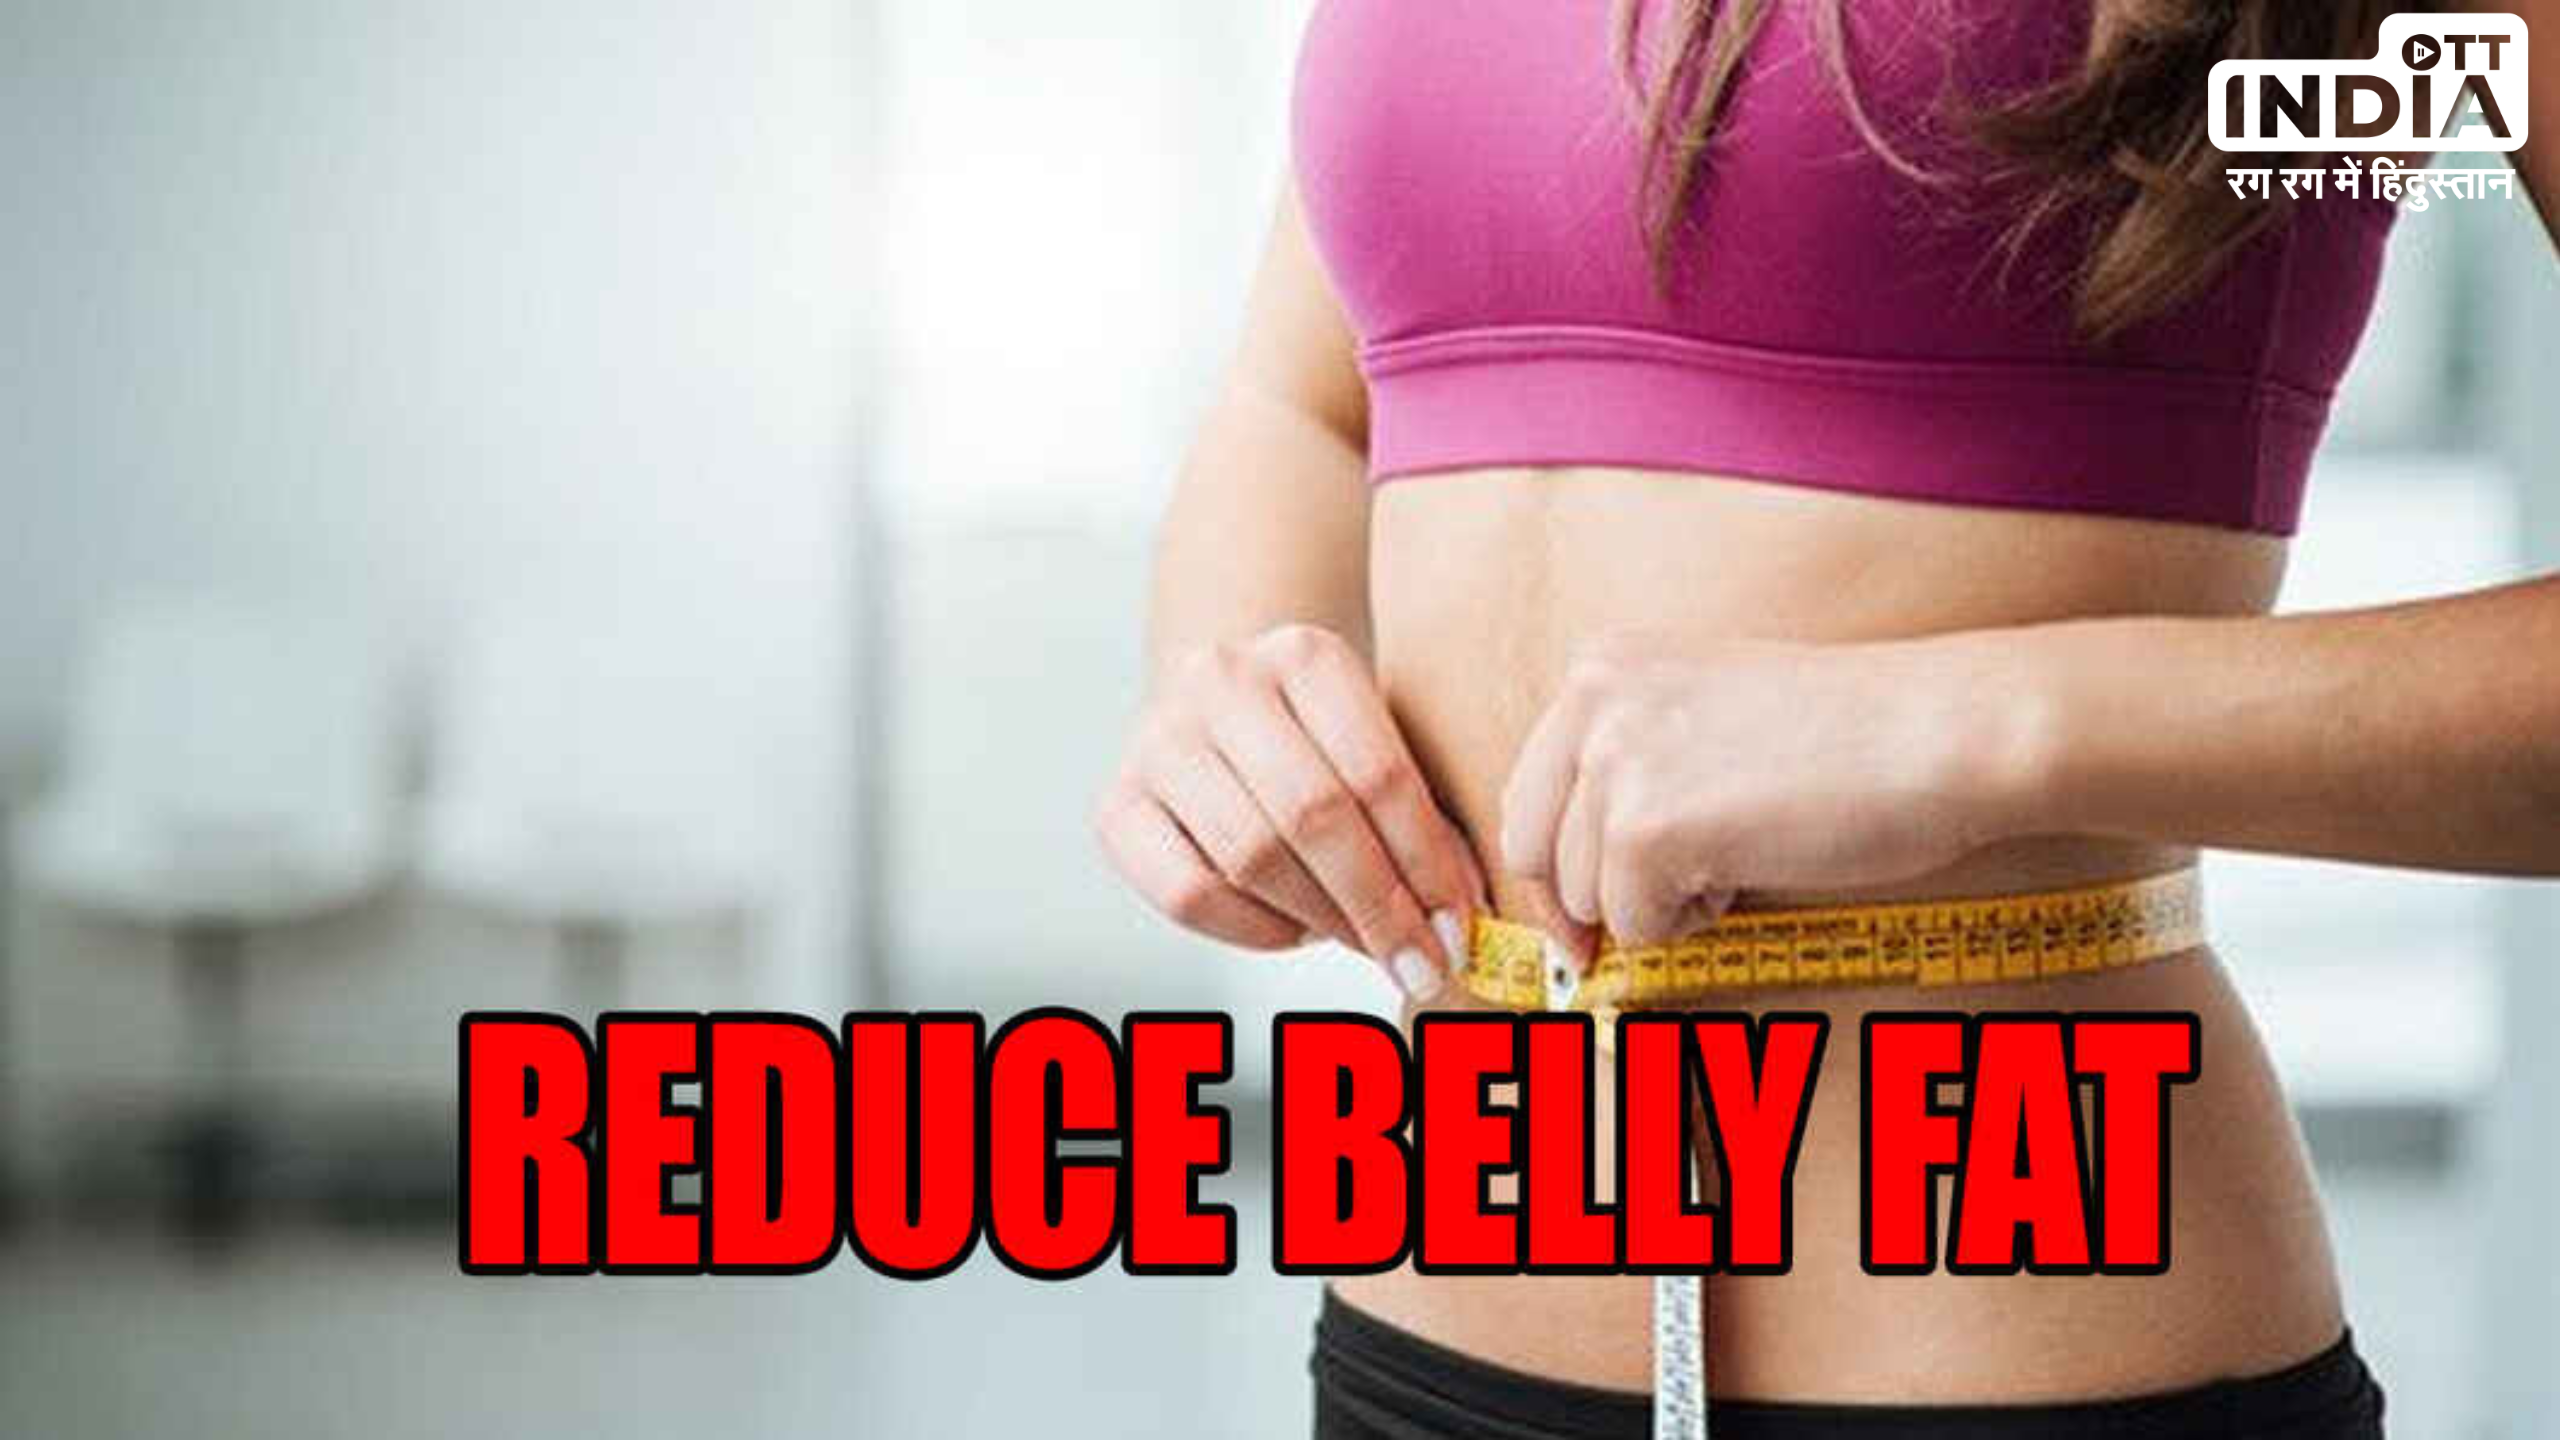 Tips to Reduce Belly Fat: इन पांच आयर्वेदिक तरीकों से घटायें बेली फैट, आजमाएं और देखें कमाल